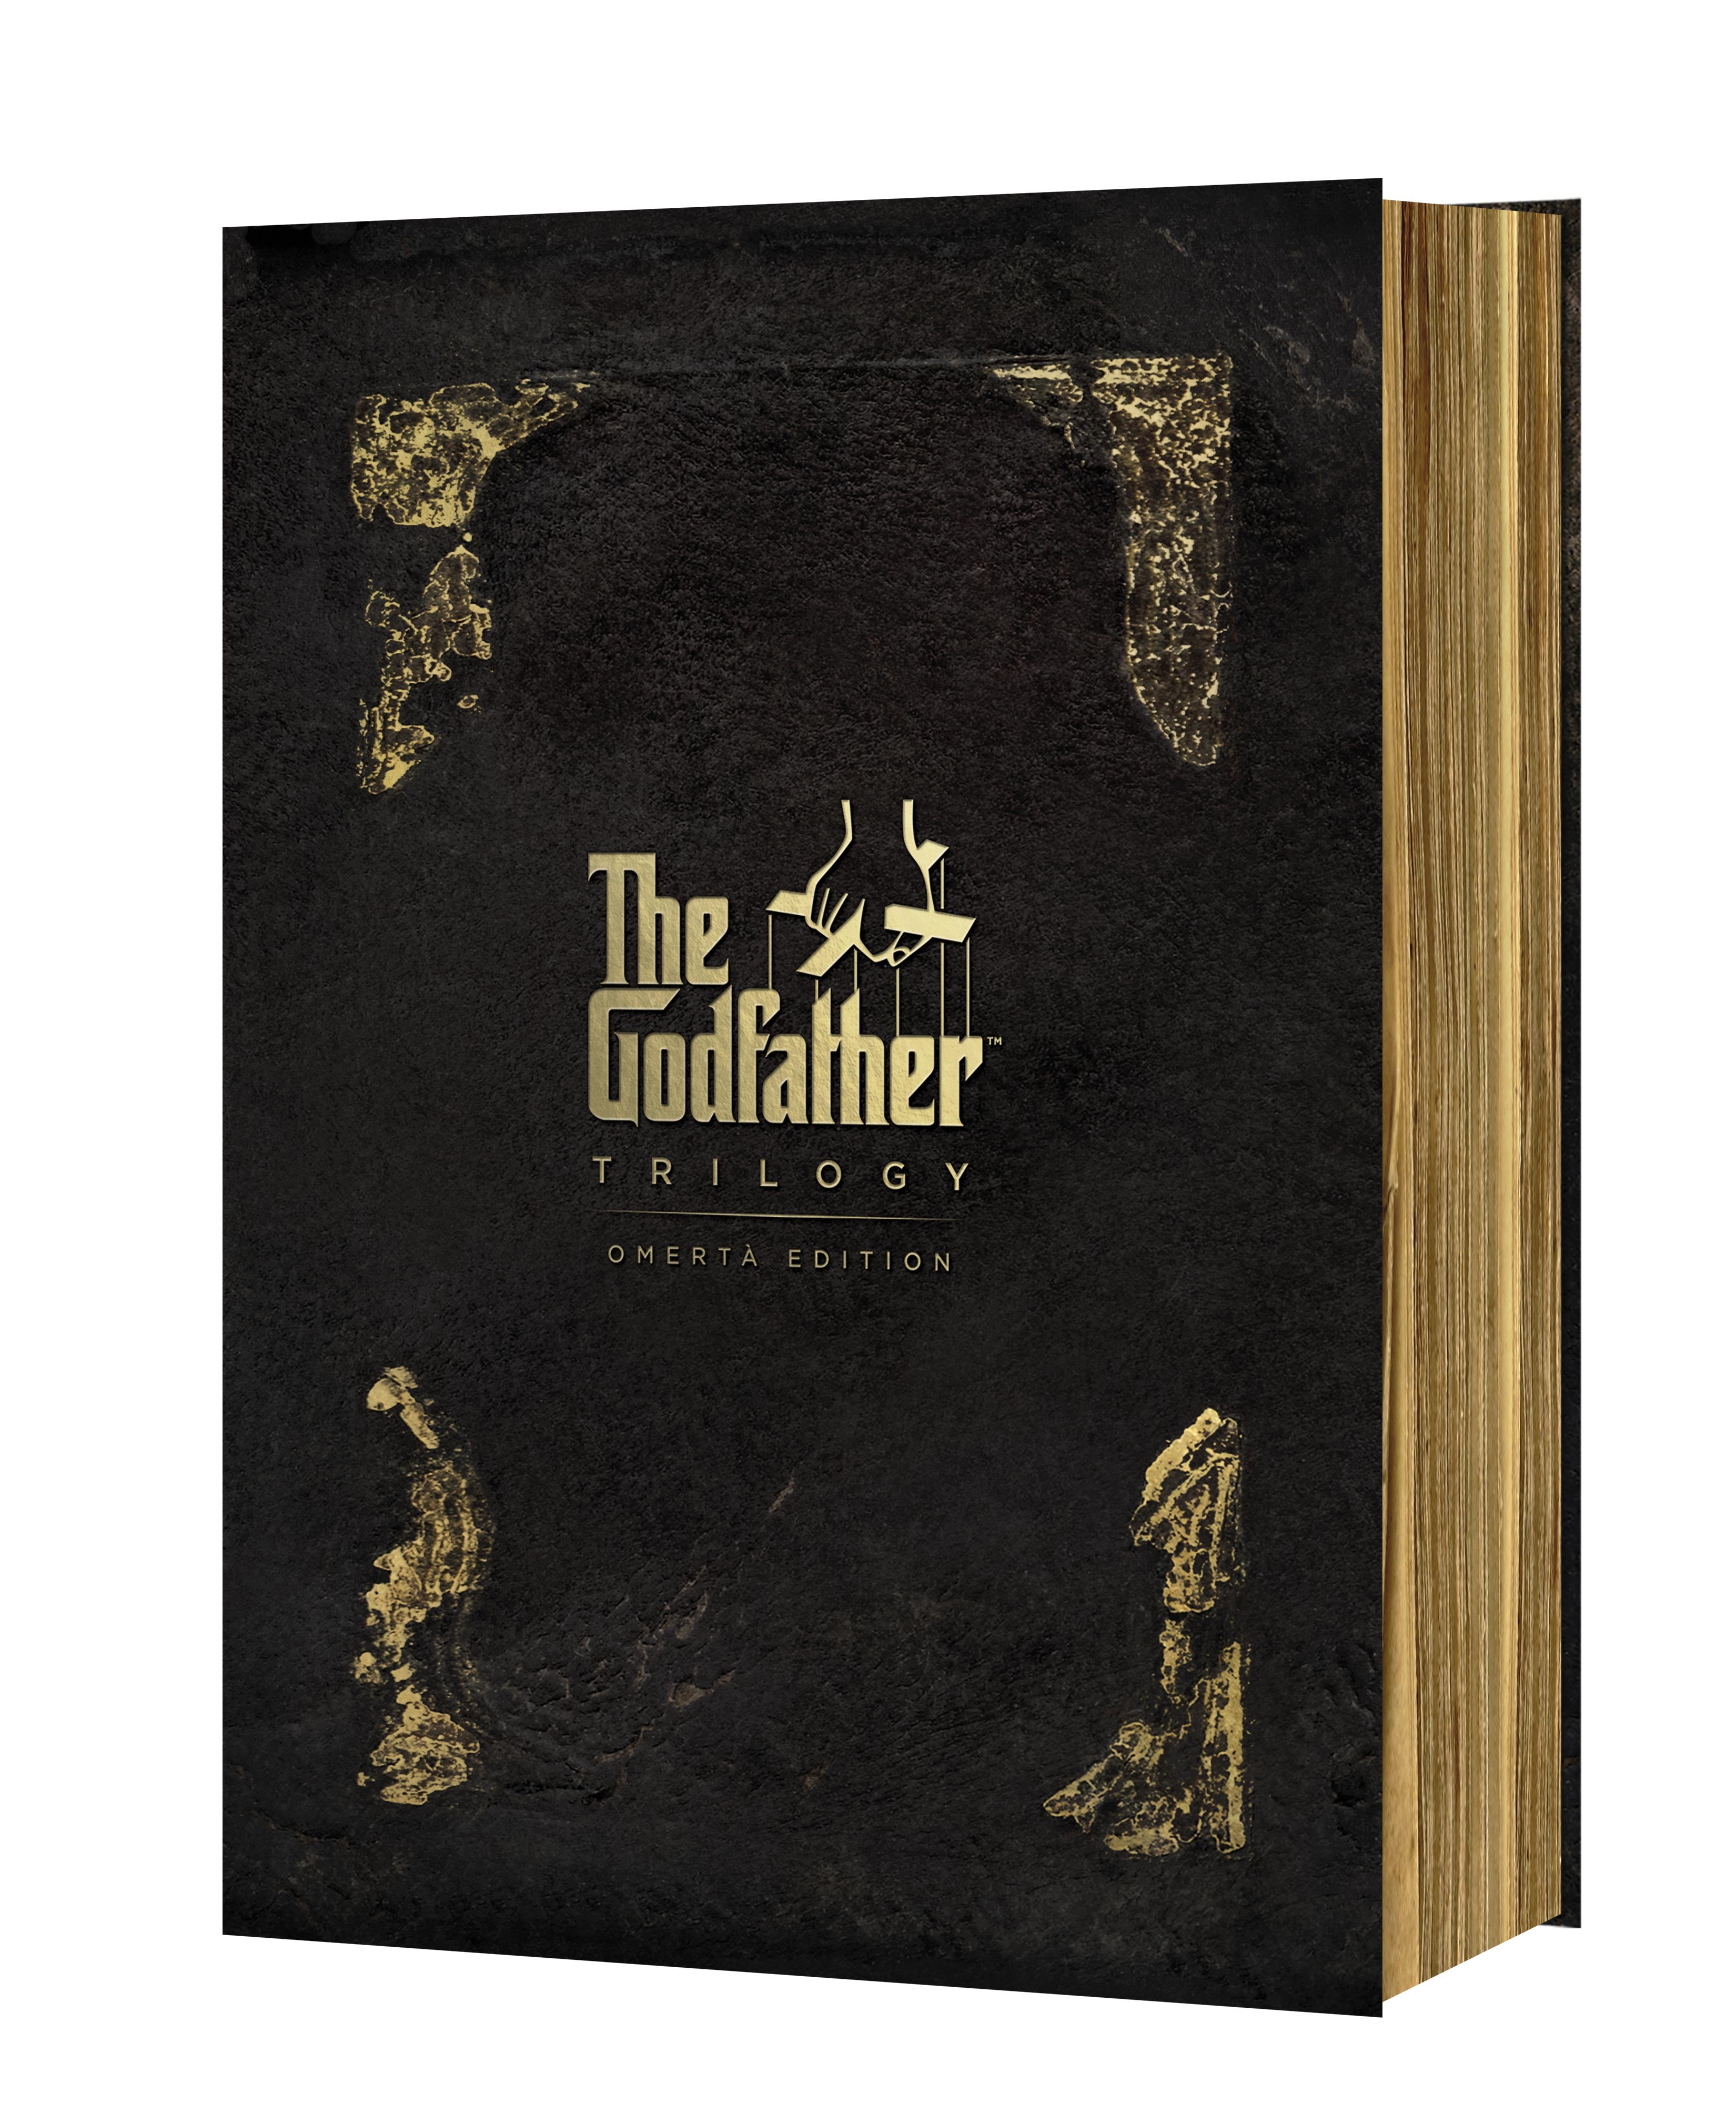 Kmotr kolekce - edice Omerta 4DVD / The Godfather Collection: Omerta Edition